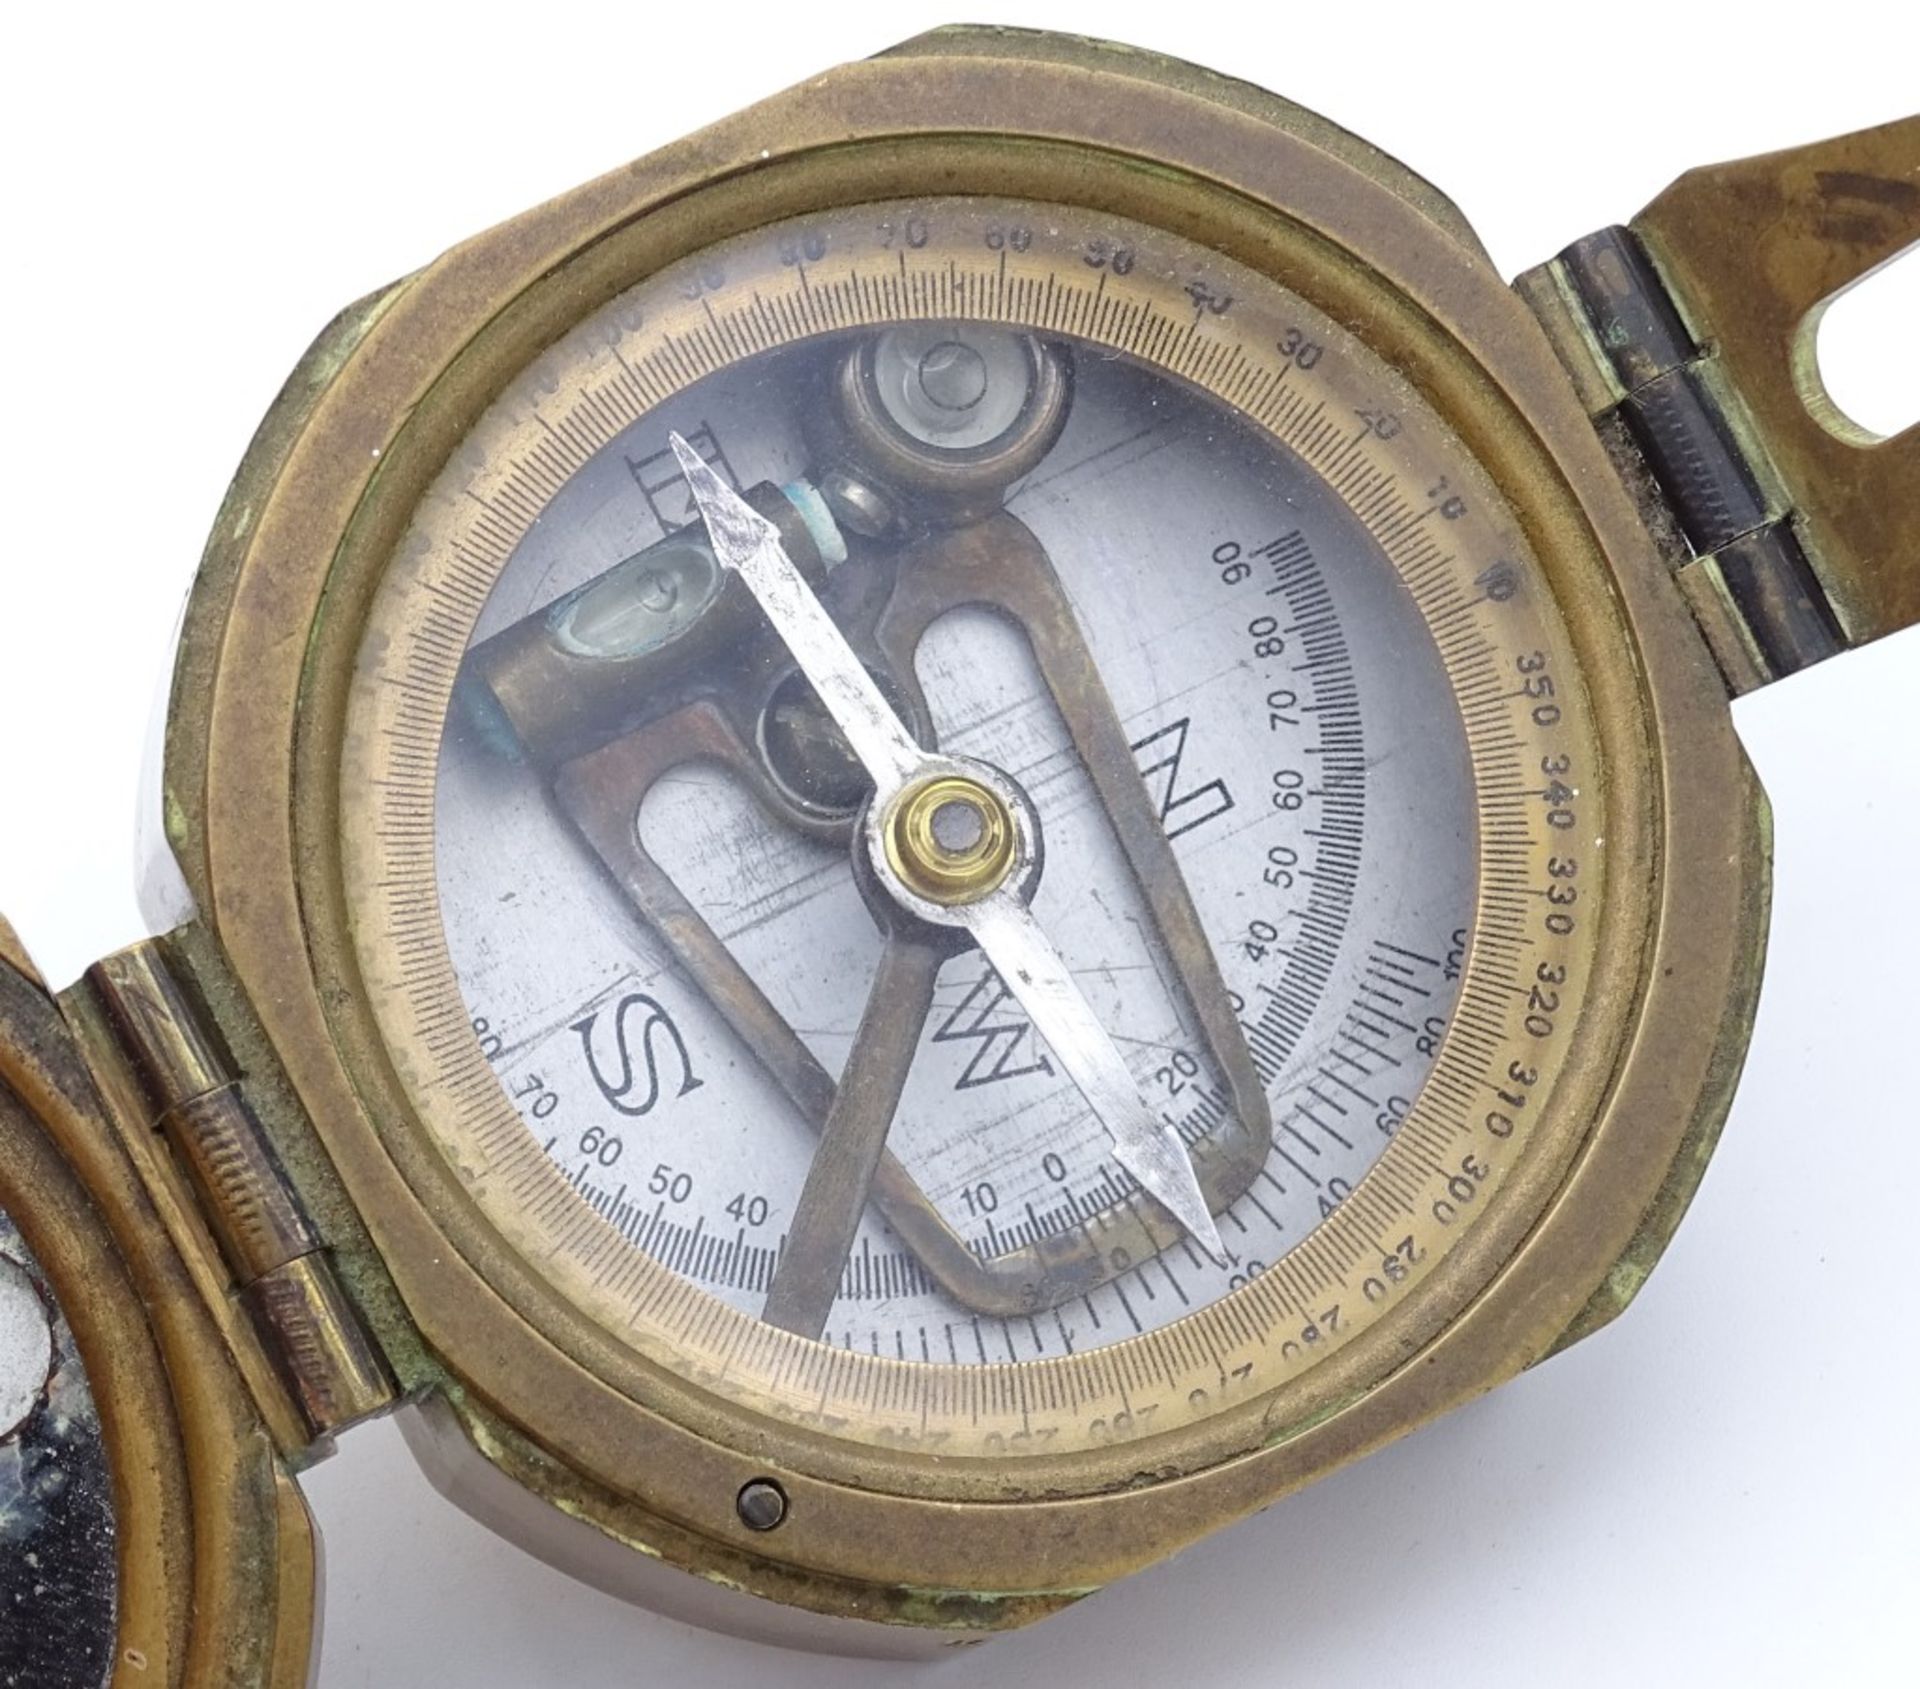 Kl.Kompass "Stanley London" Messinggehäuse mit innliegender Wasserwaage,7,0x8,0cm - Bild 2 aus 6